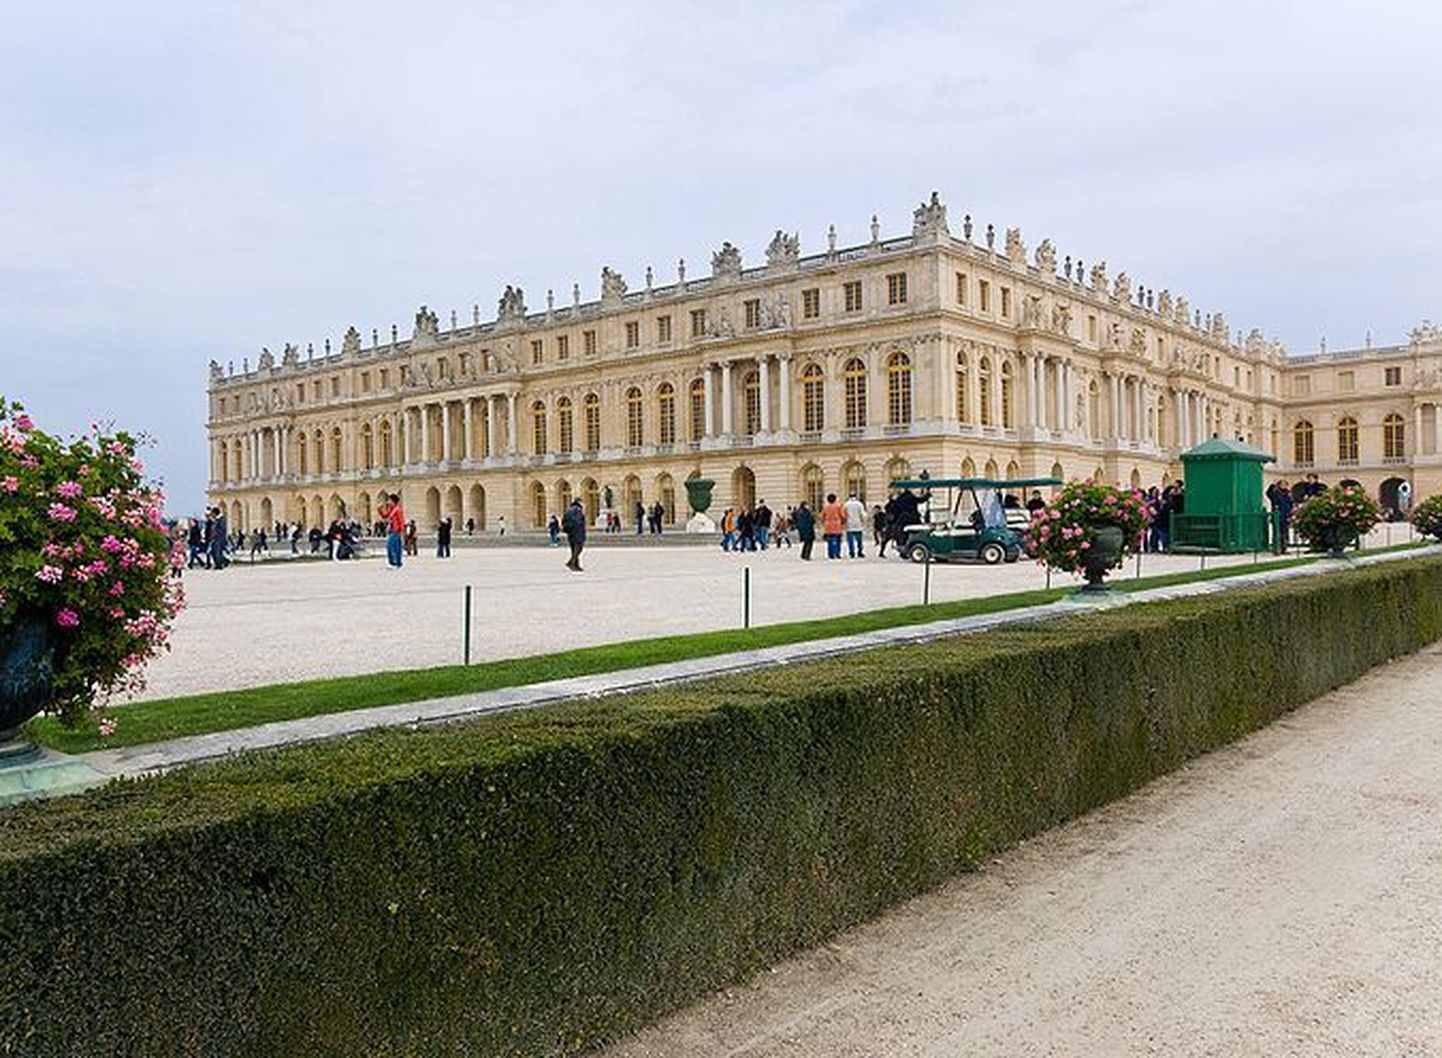 Versailles loss